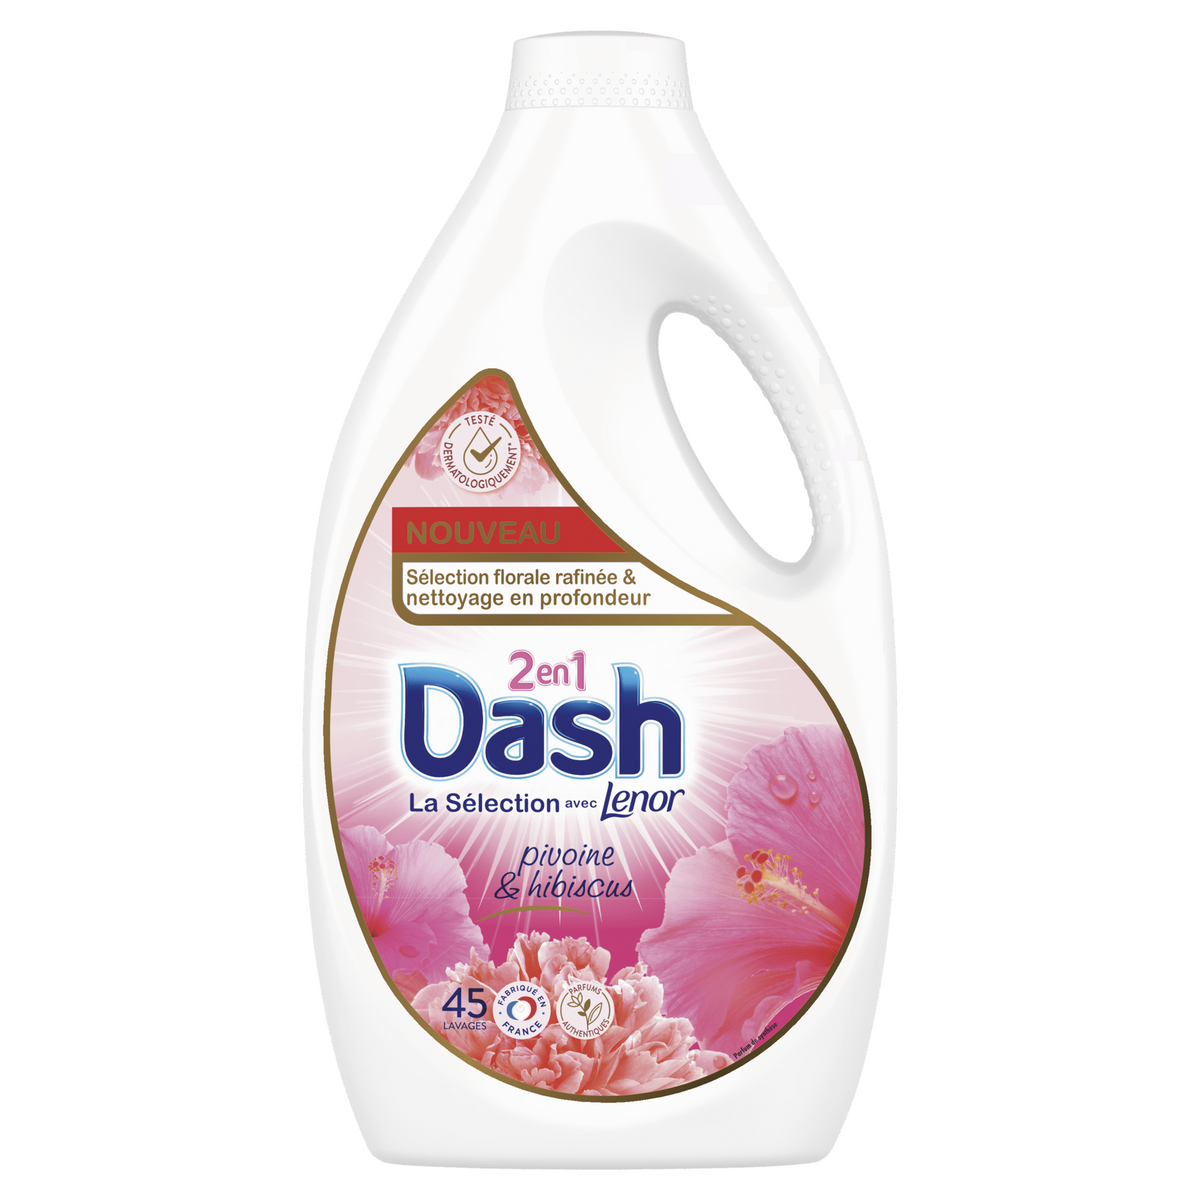 Lessive liquide Dash Professional 2 en 1, 110 lavages - Lessive liquide